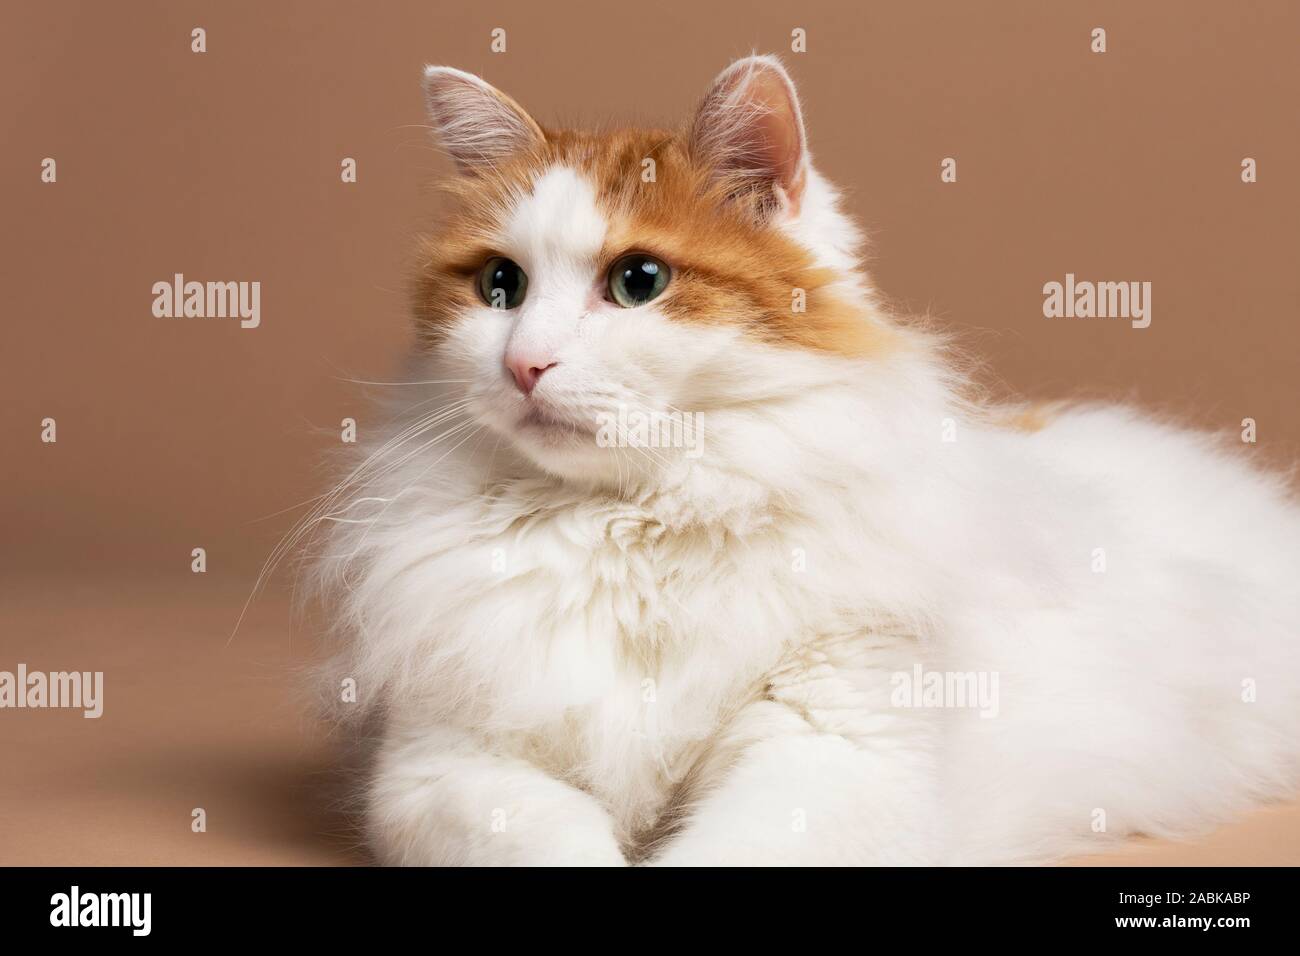 Un portrait of a cute belle couleur marron et blanc moelleux chat turc de van aux yeux verts fixant devant un fond beige marron s horizontal Banque D'Images